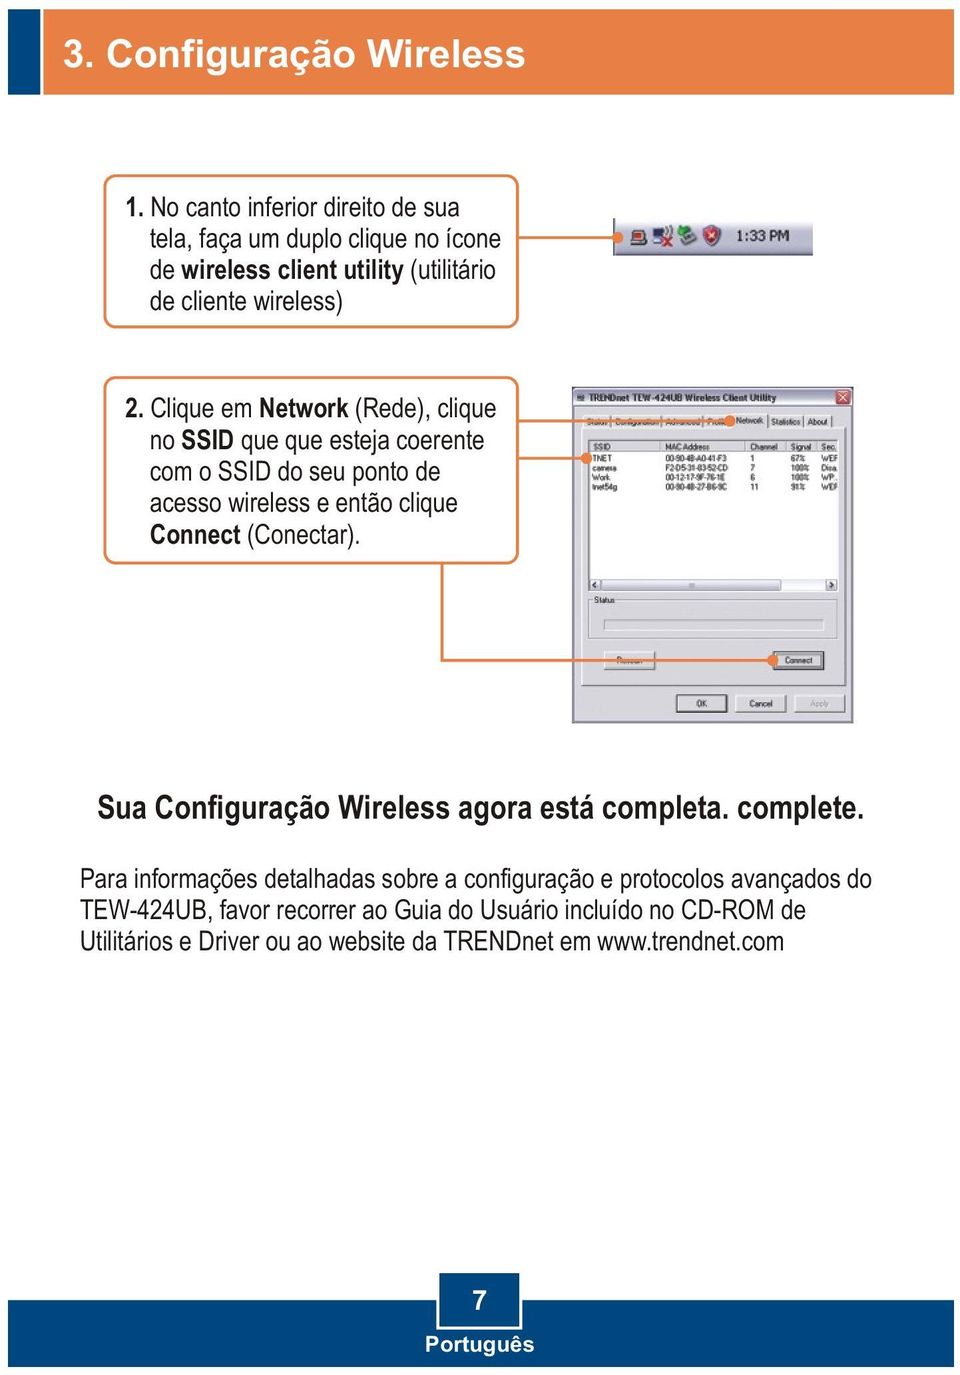 Clique em Network (Rede), clique no SSID que que esteja coerente com o SSID do seu ponto de acesso wireless e então clique Connect (Conectar).